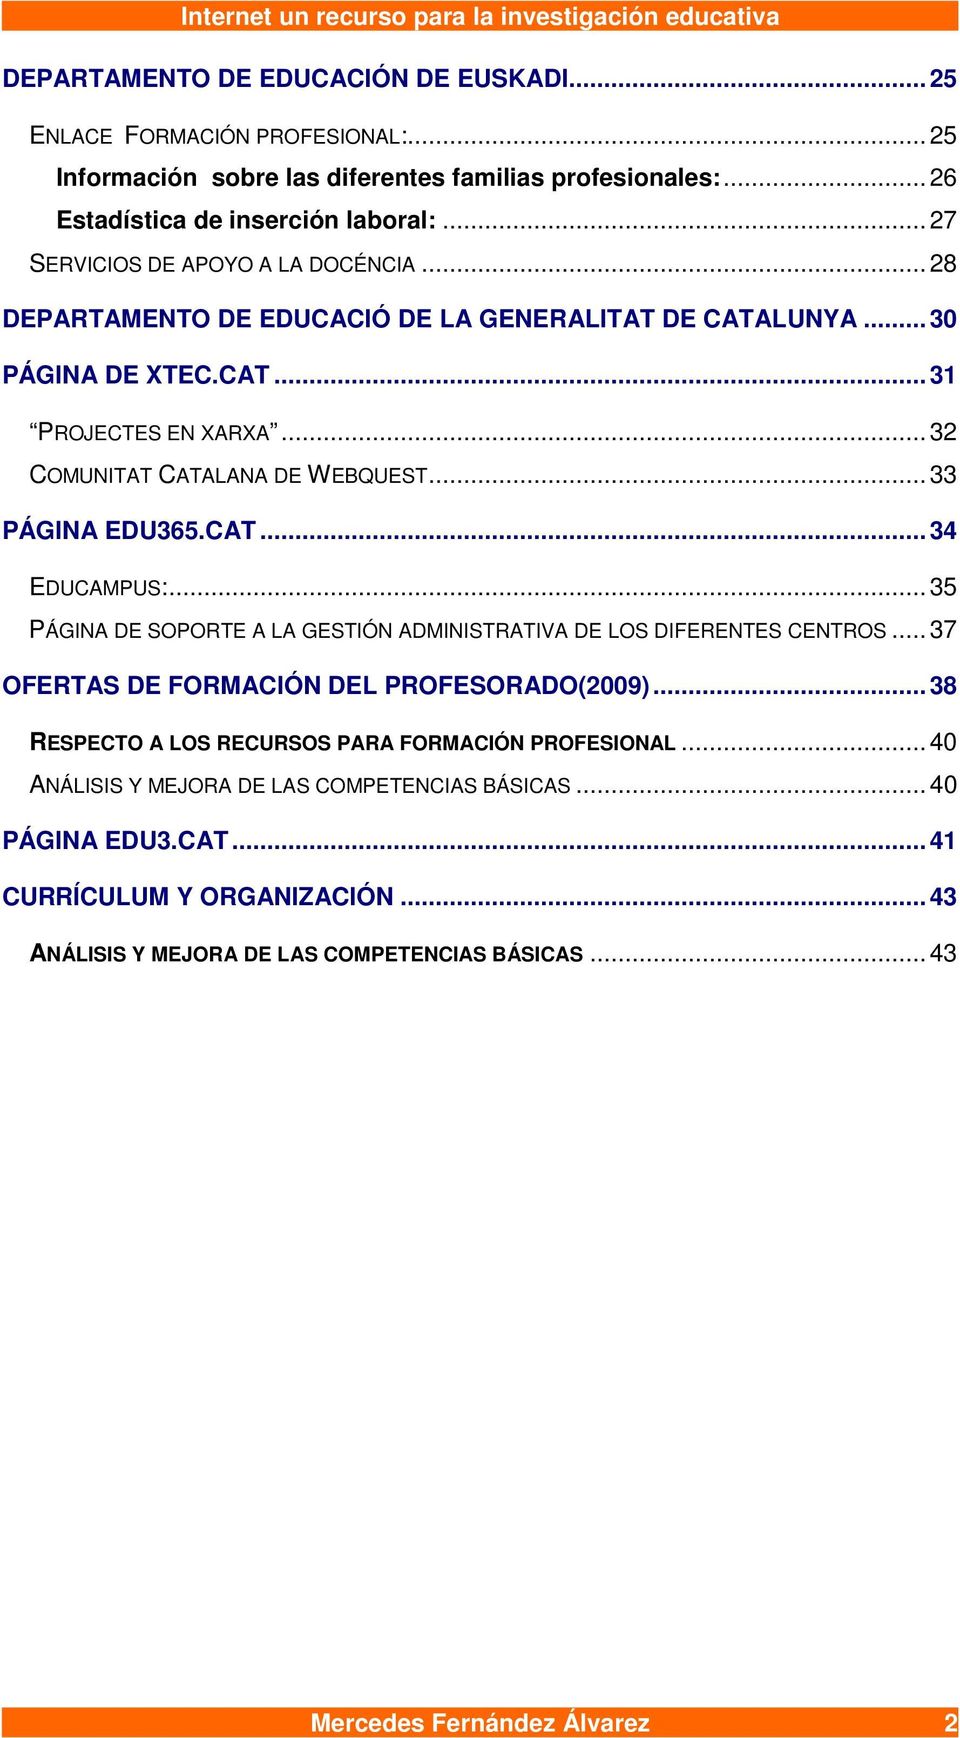 .. 33 PÁGINA EDU365.CAT... 34 EDUCAMPUS:... 35 PÁGINA DE SOPORTE A LA GESTIÓN ADMINISTRATIVA DE LOS DIFERENTES CENTROS... 37 OFERTAS DE FORMACIÓN DEL PROFESORADO(2009).